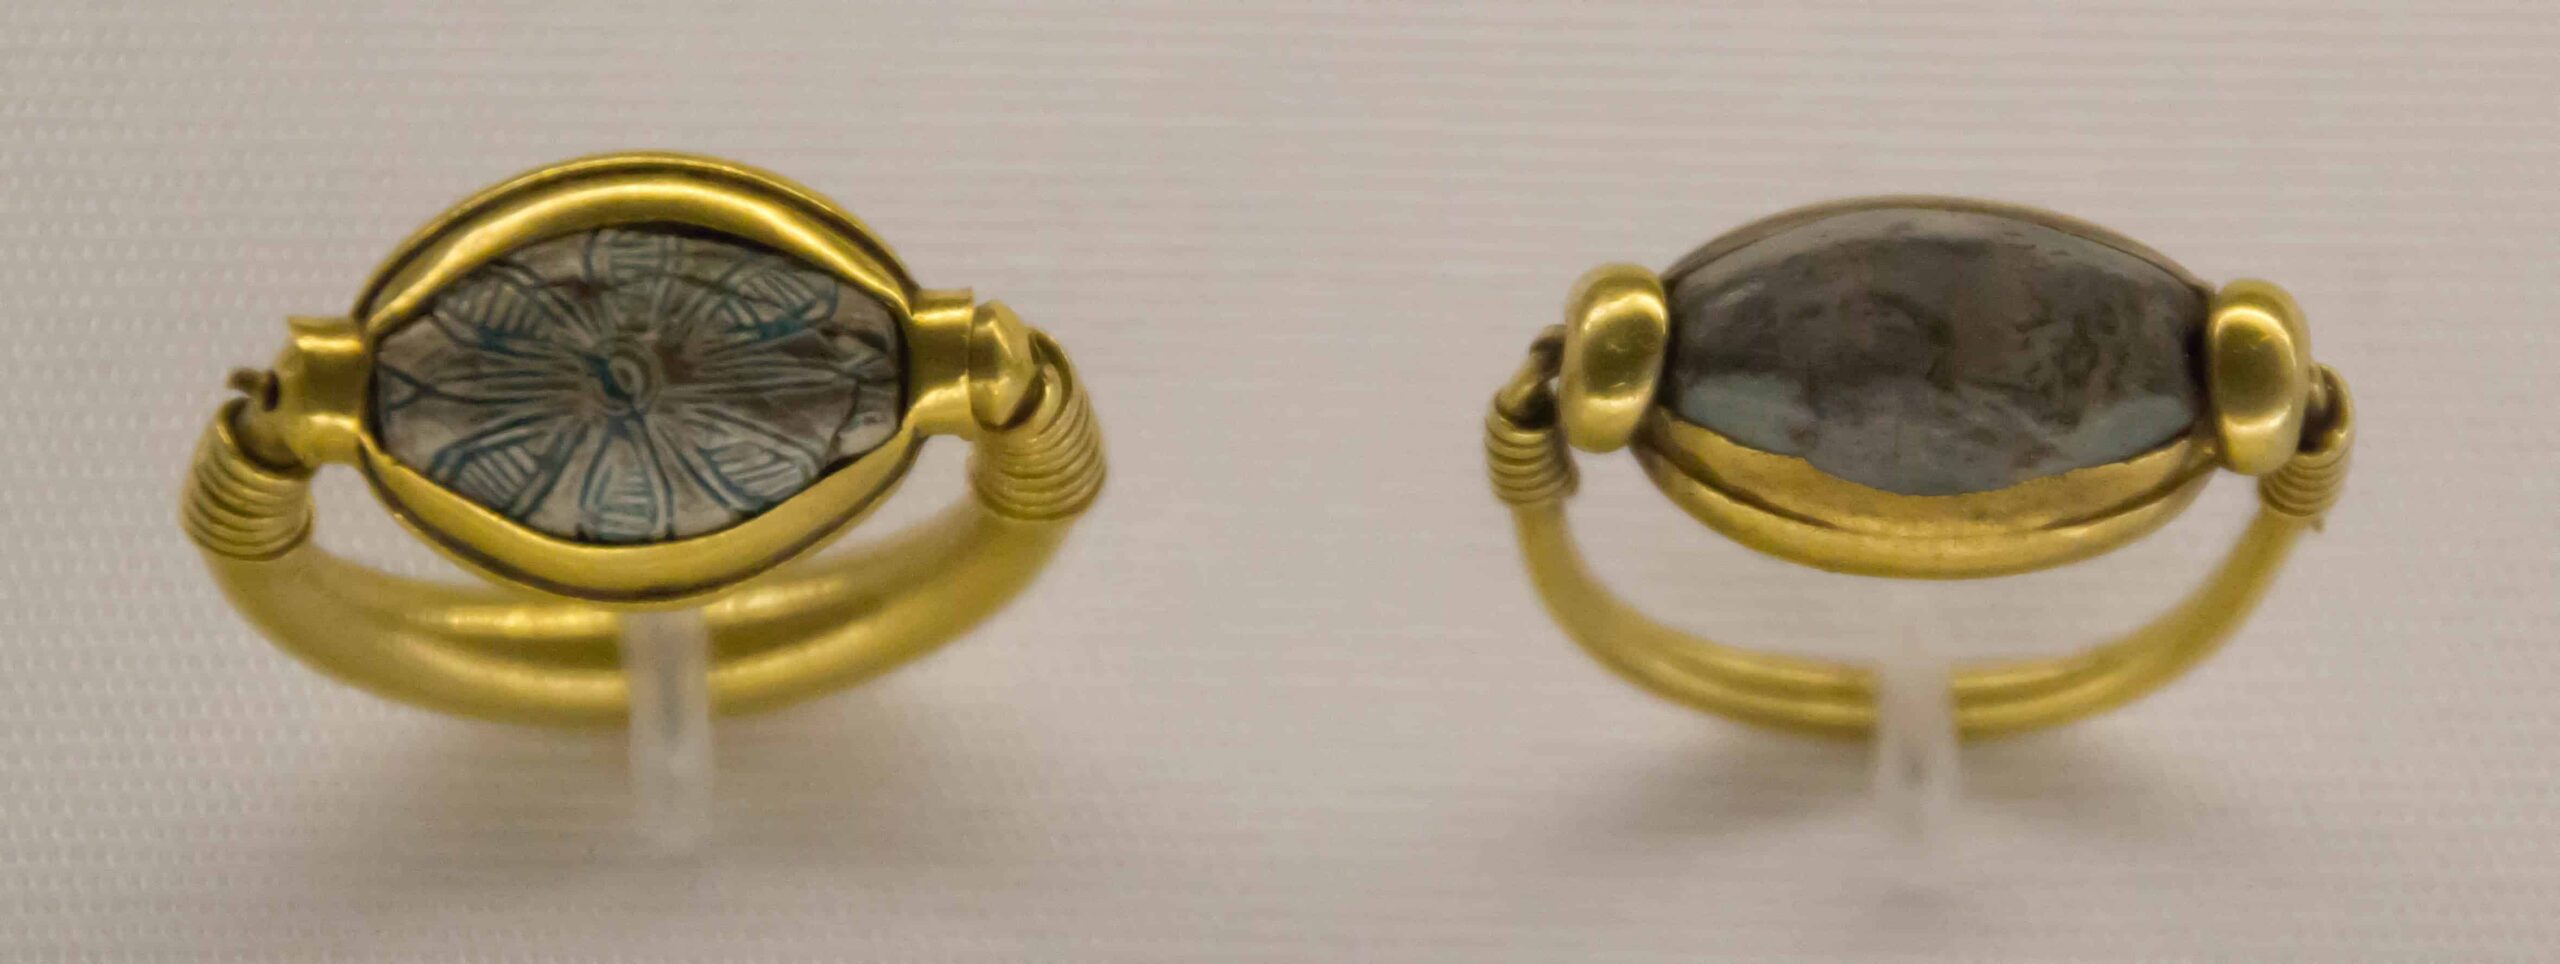 Egyptian Rings.